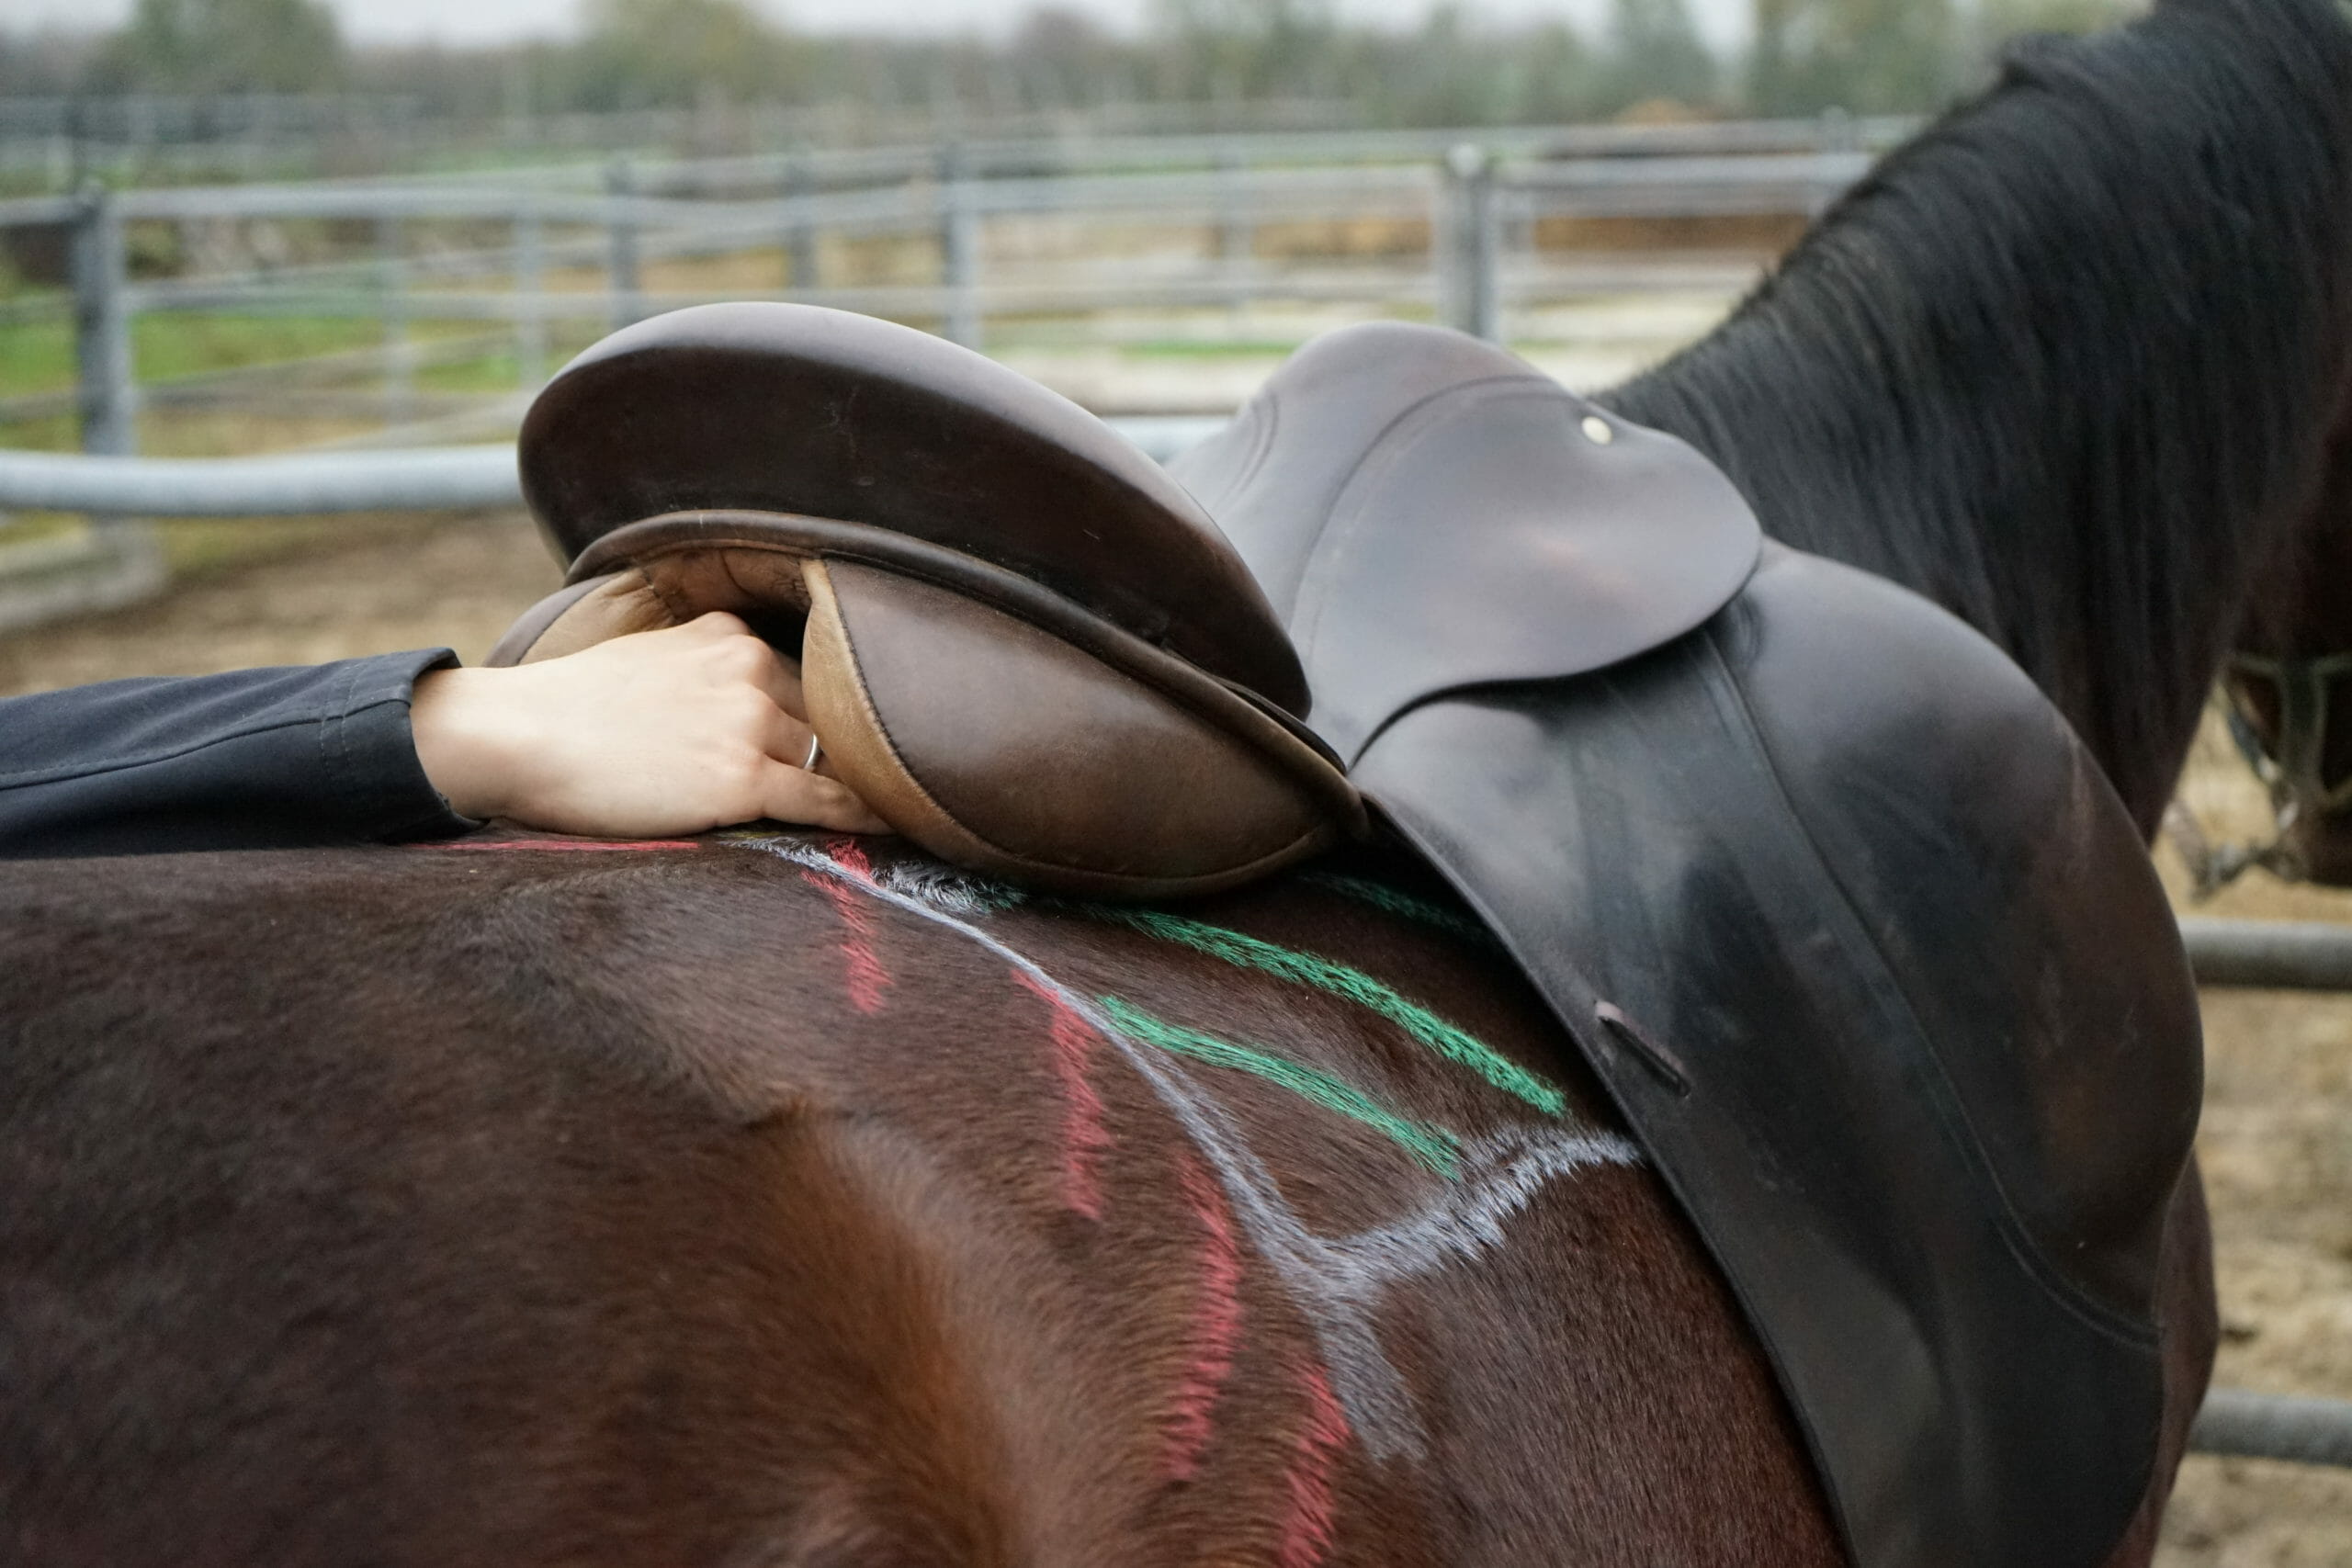 ilaria saddle service - saddle fitting